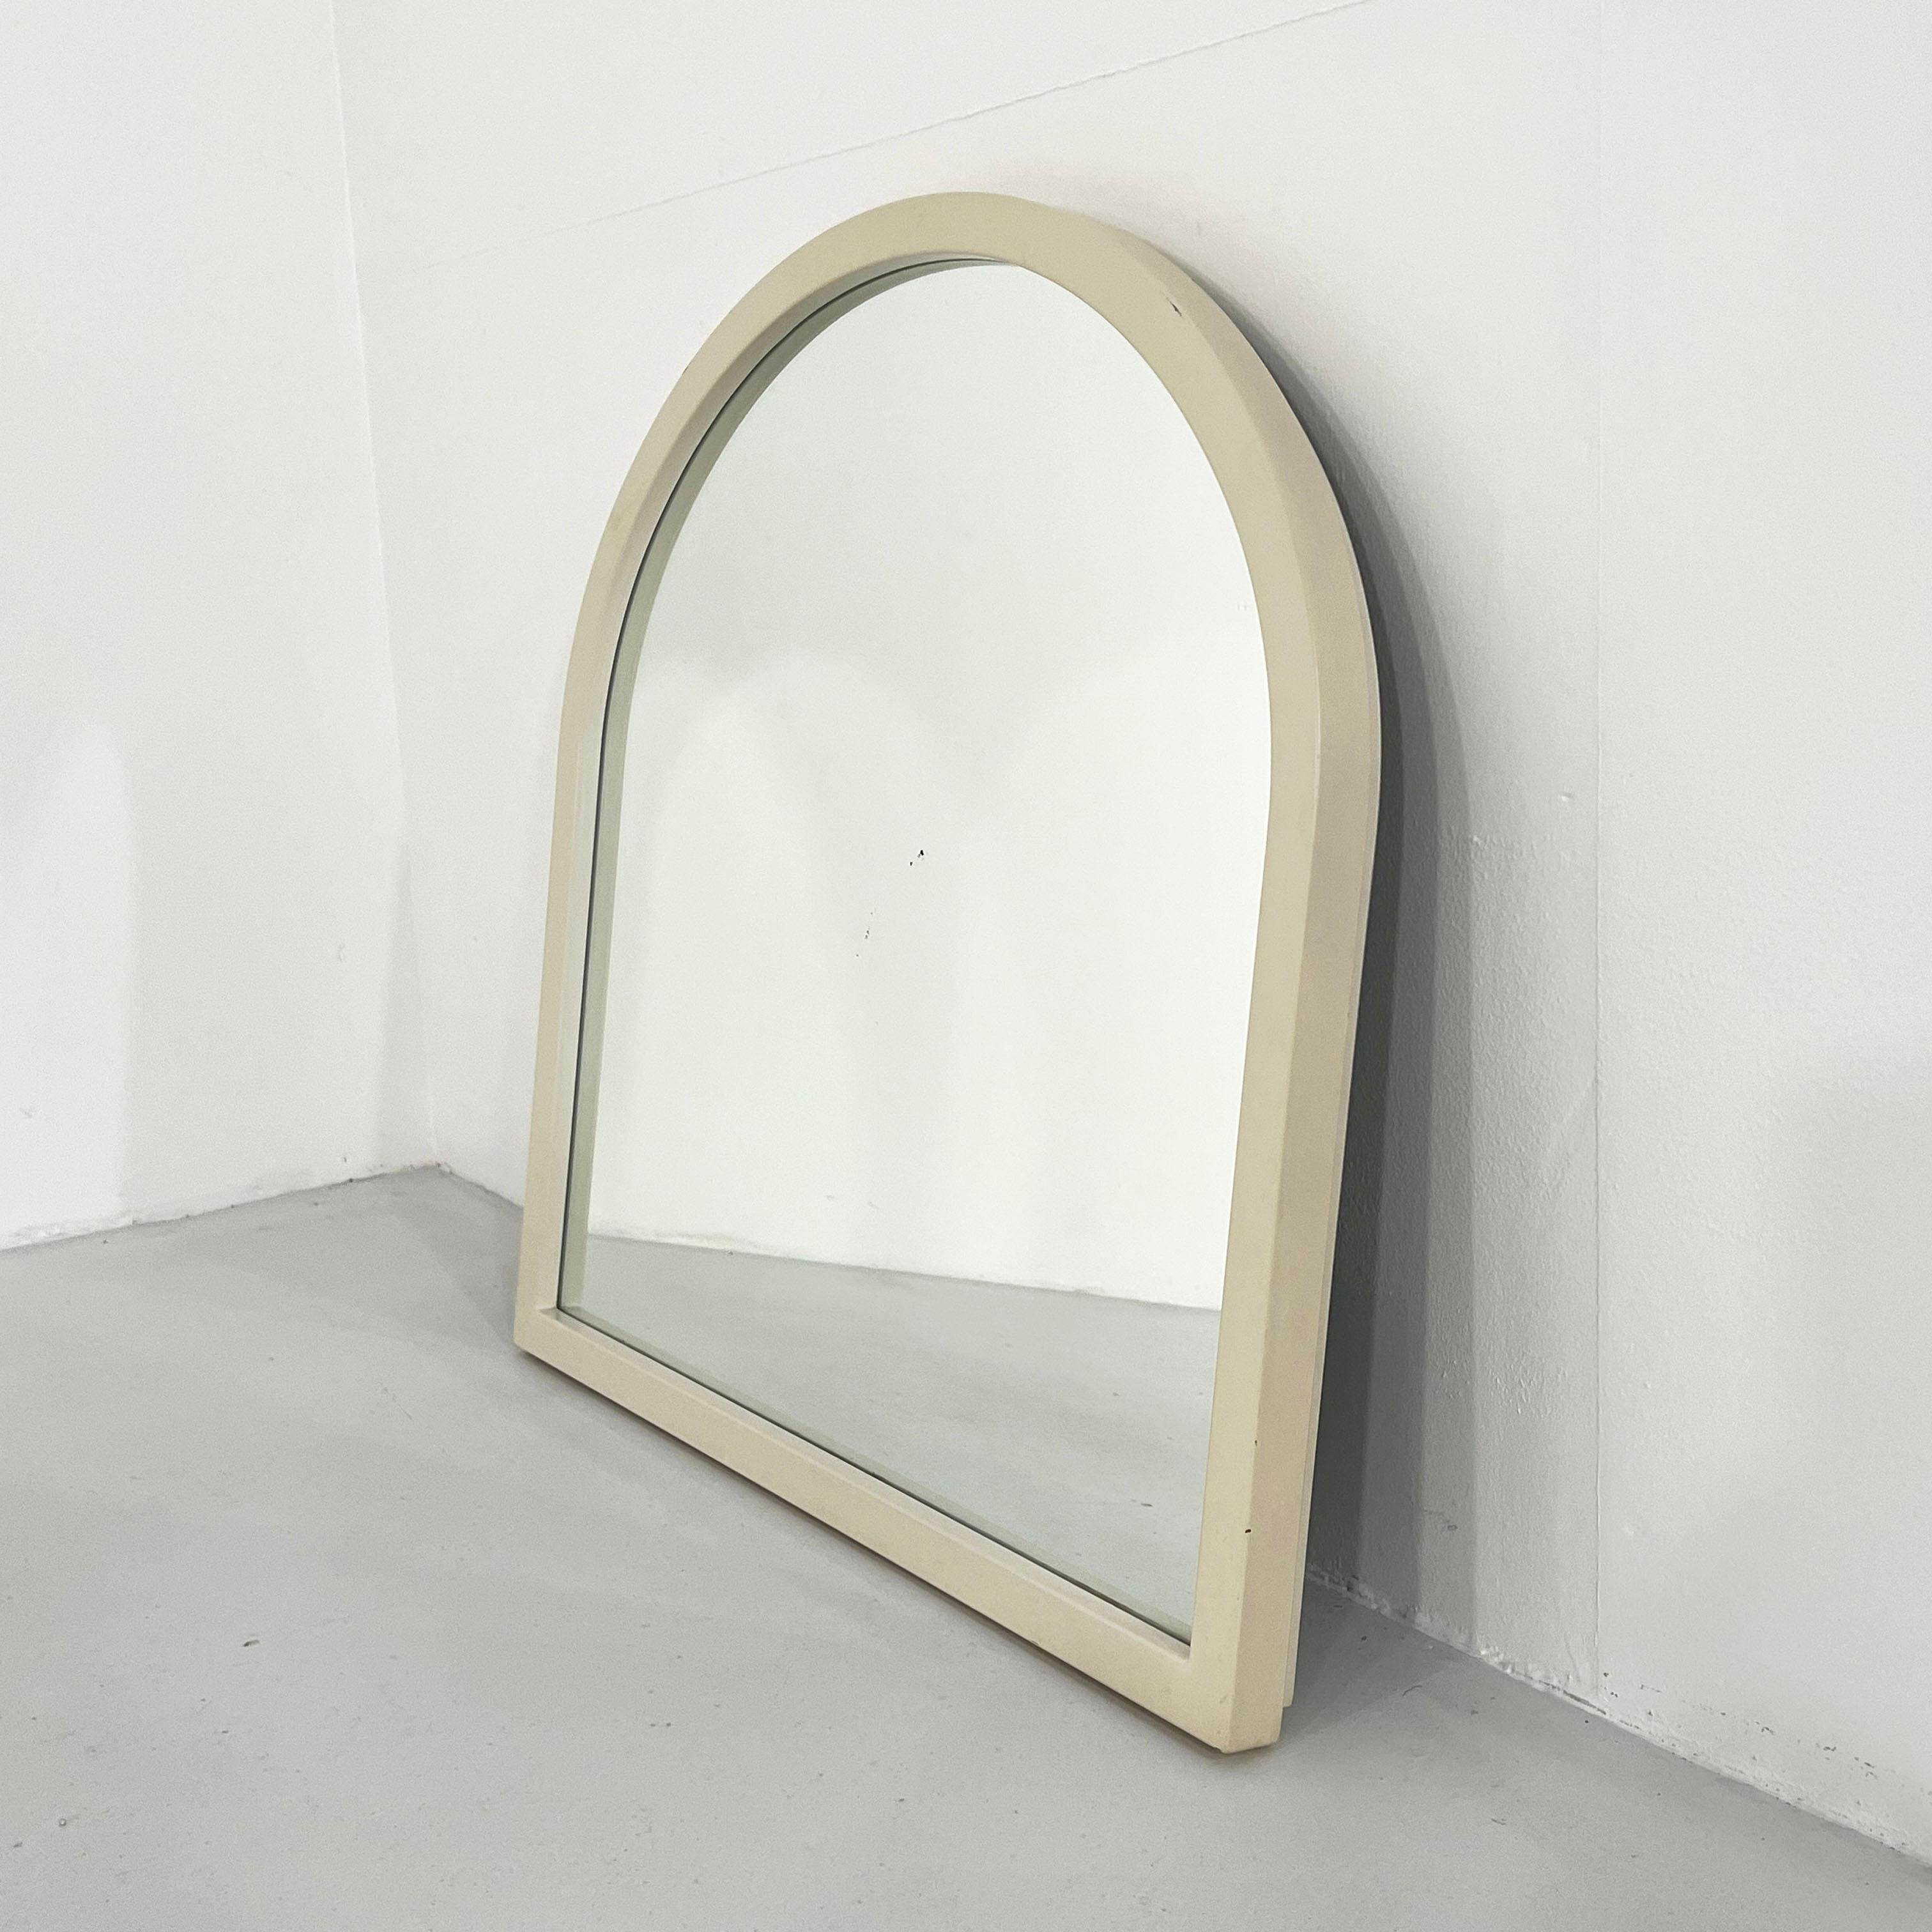 Italian White Frame Mirror Model 4720 by Anna Castelli Ferrieri for Kartell, 1980s